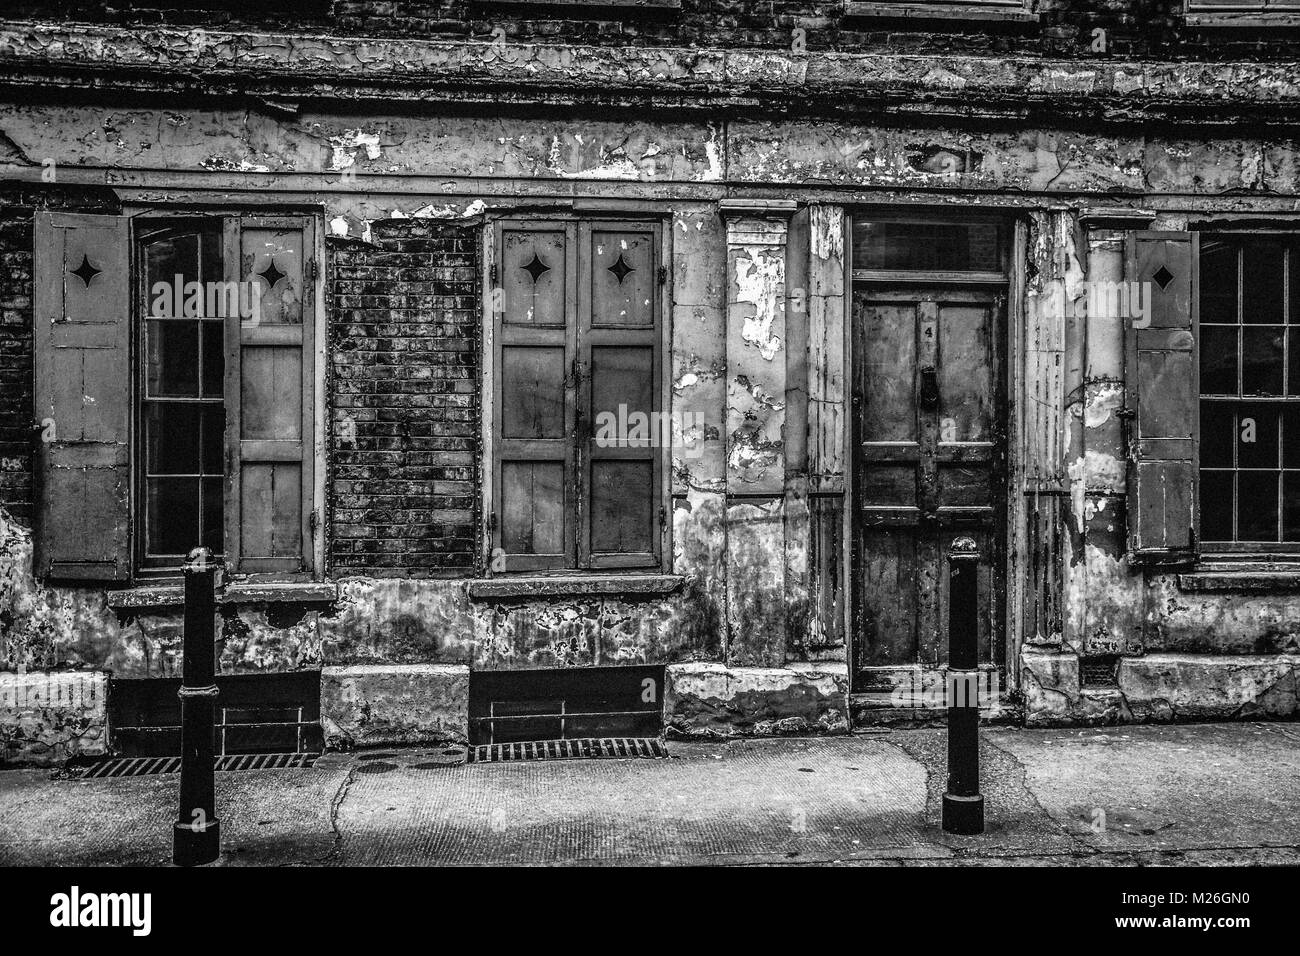 Immagine contemporanea in bianco e nero della vecchia Londra: Casa in stile Huguenot, via Princelet, Spitalfields, Londra. Foto Stock